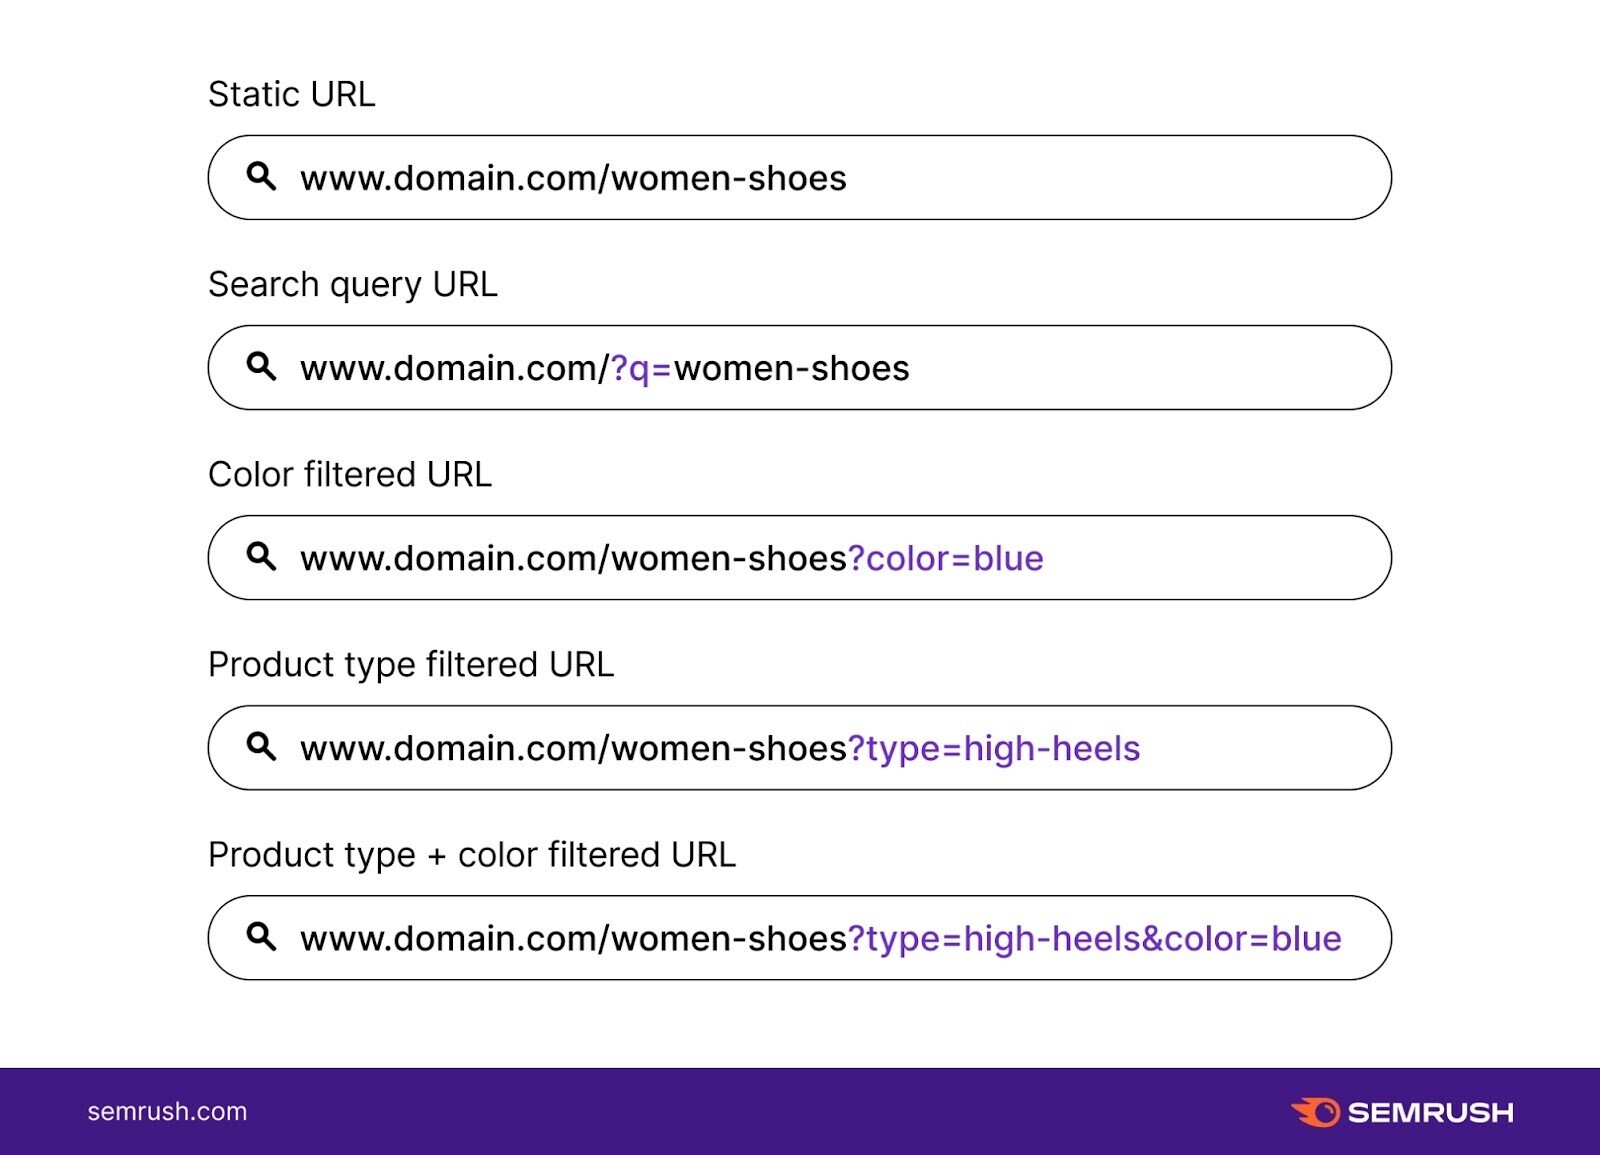 نمونه ای از چند URL پارامتری از یک فروشگاه آنلاین کفش